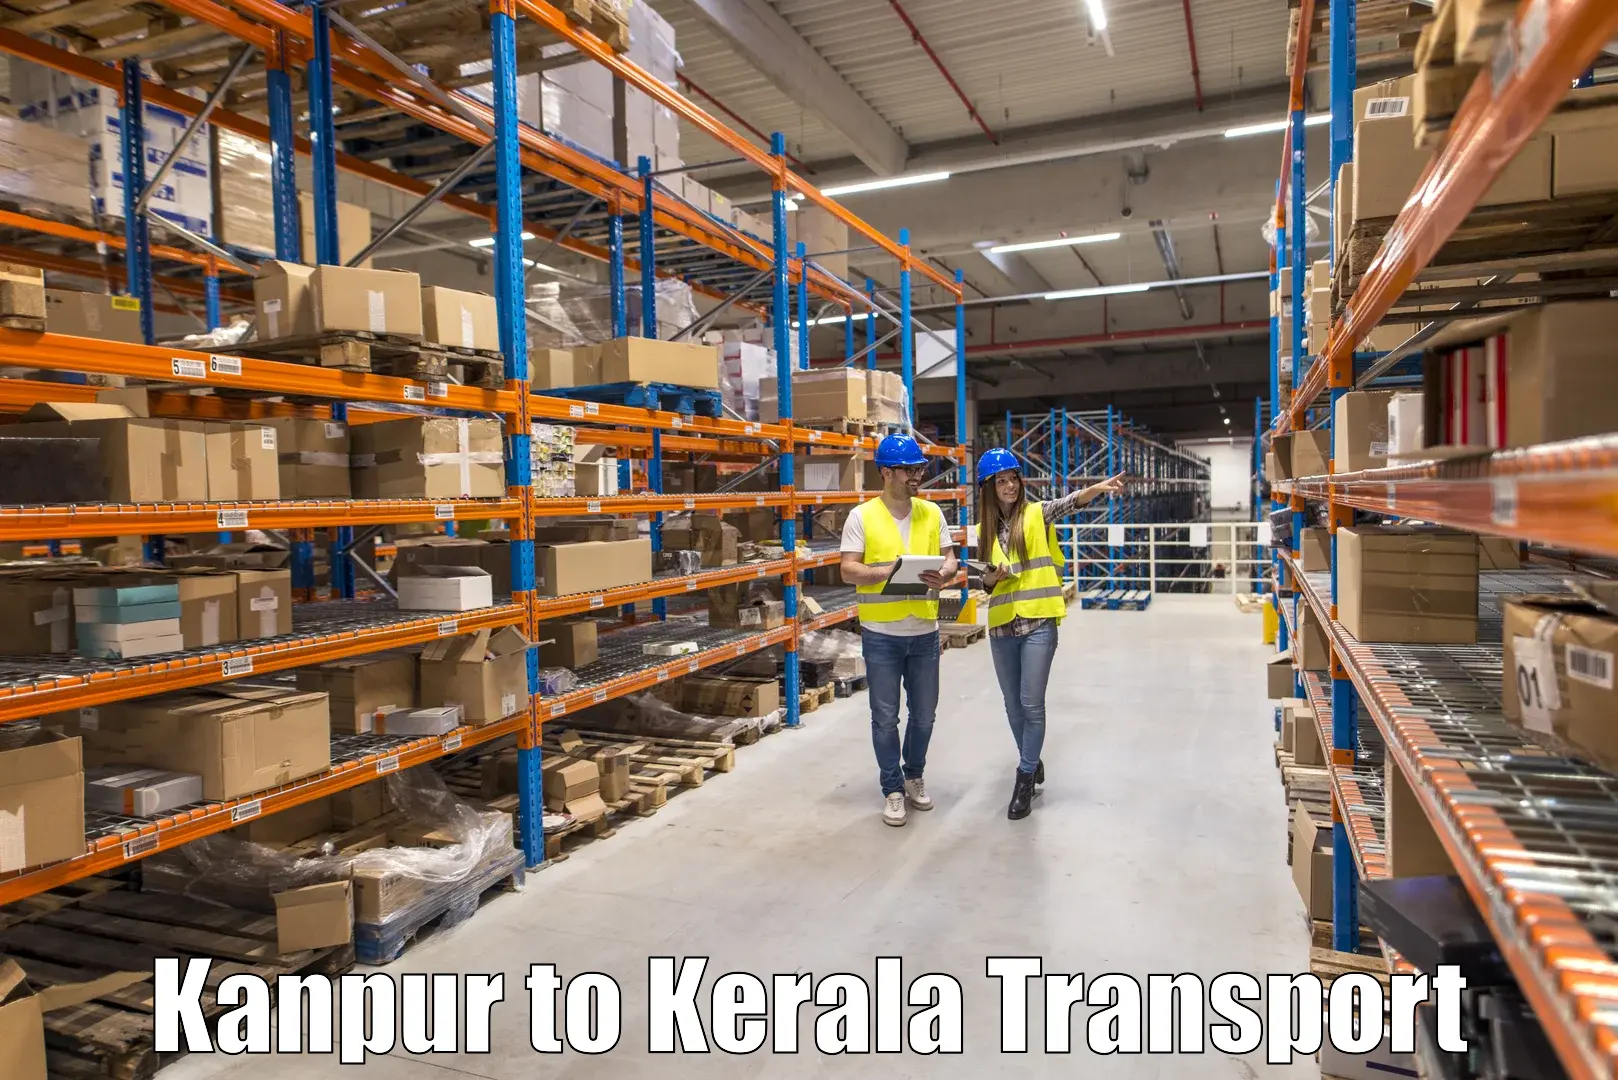 Nearest transport service Kanpur to IIT Palakkad